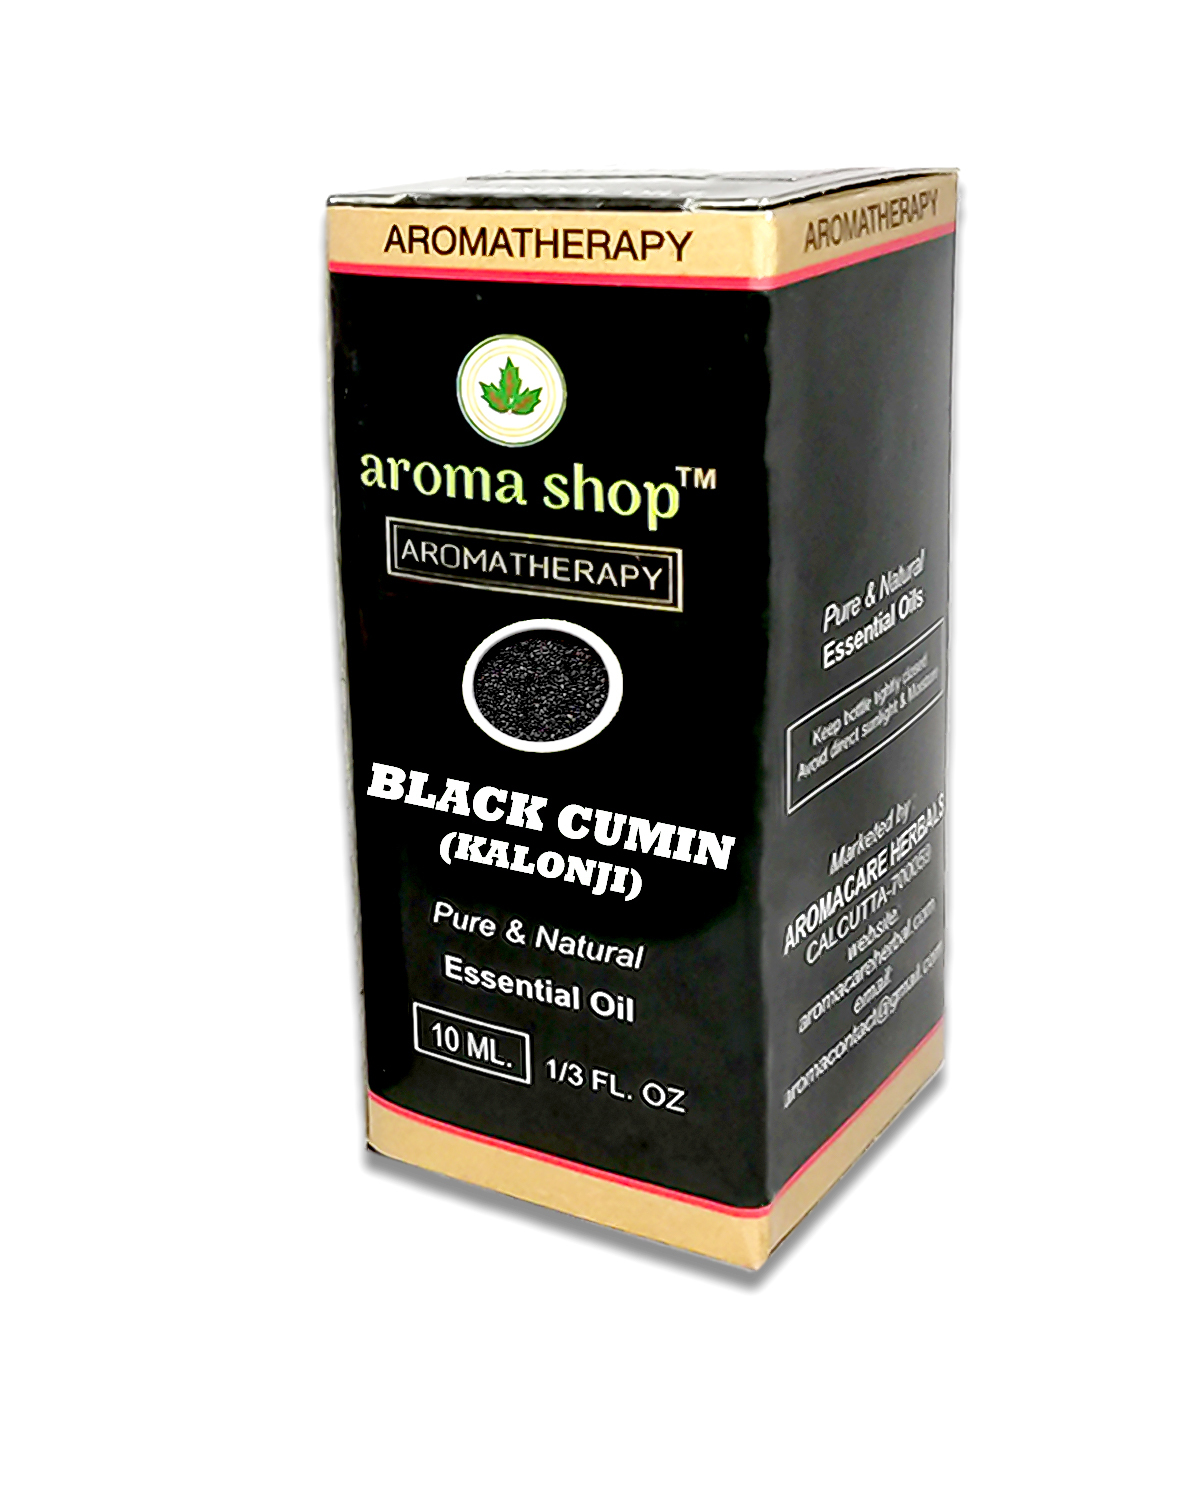 Black Cumin (Kalonji) Essential Oil